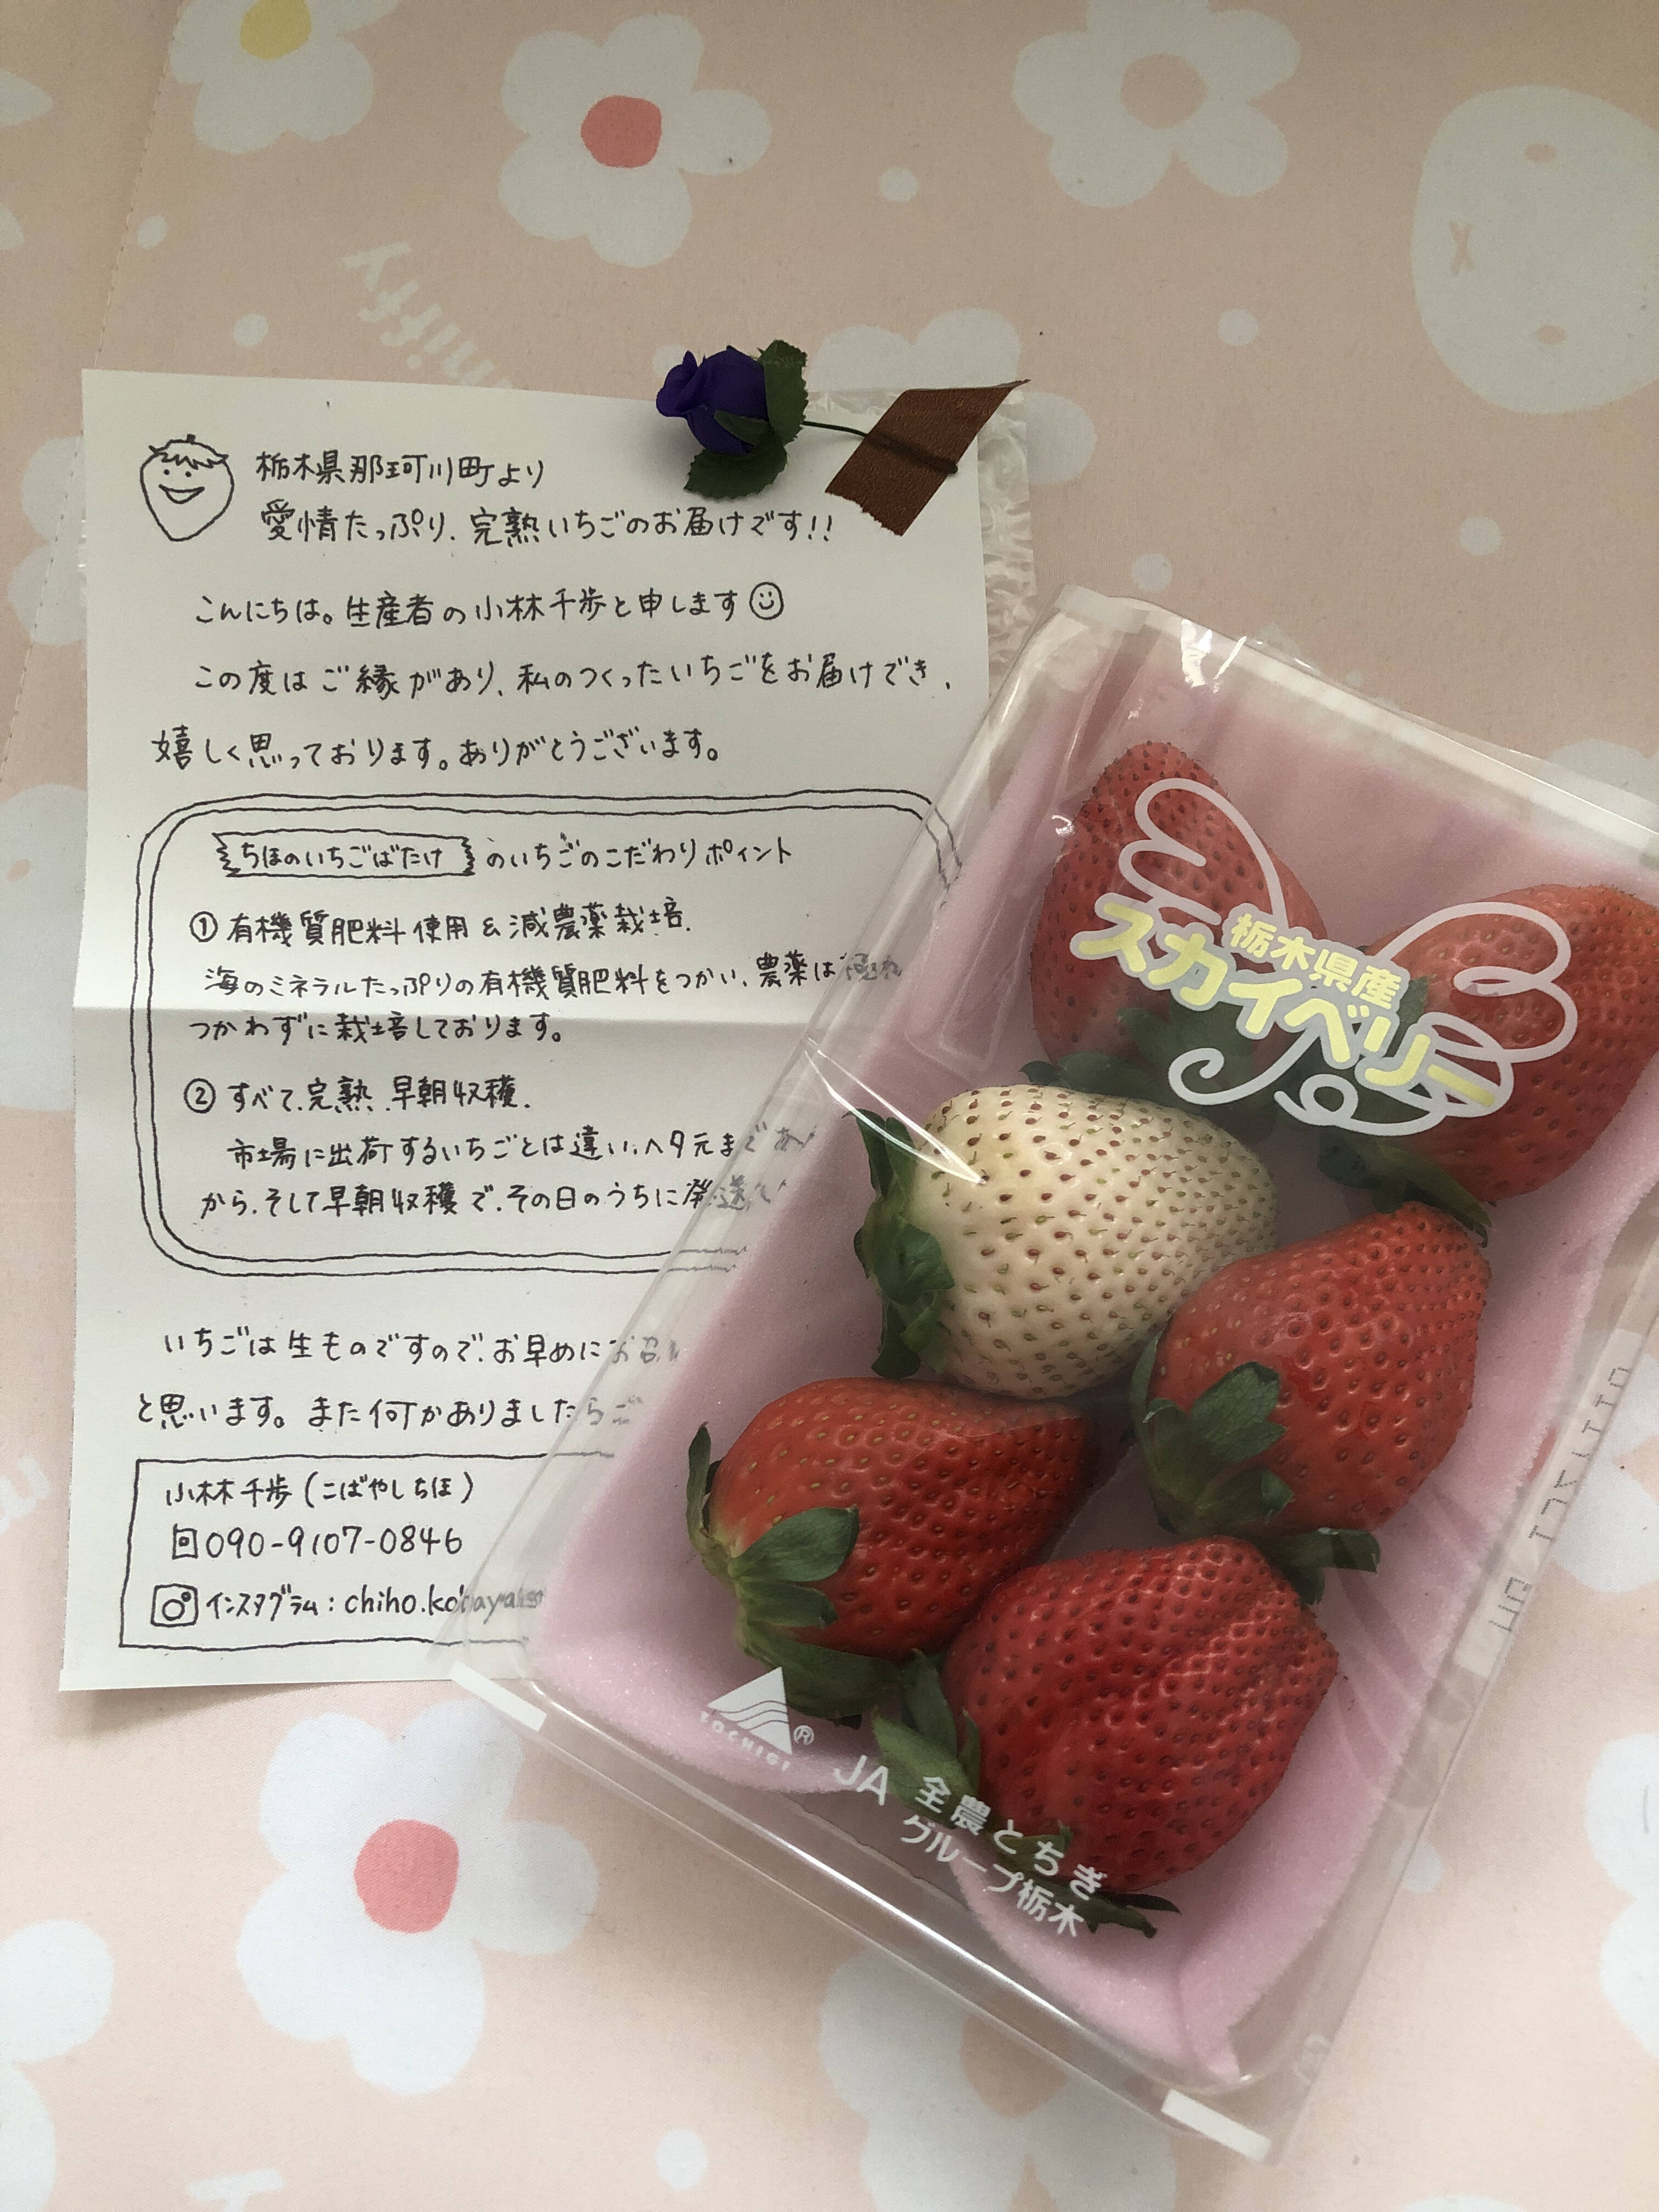 Masayo Sさんがちほのいちごばたけさんの完熟 スカイベリー 白いちご付き が 届いたよ を投稿しました 食べチョク